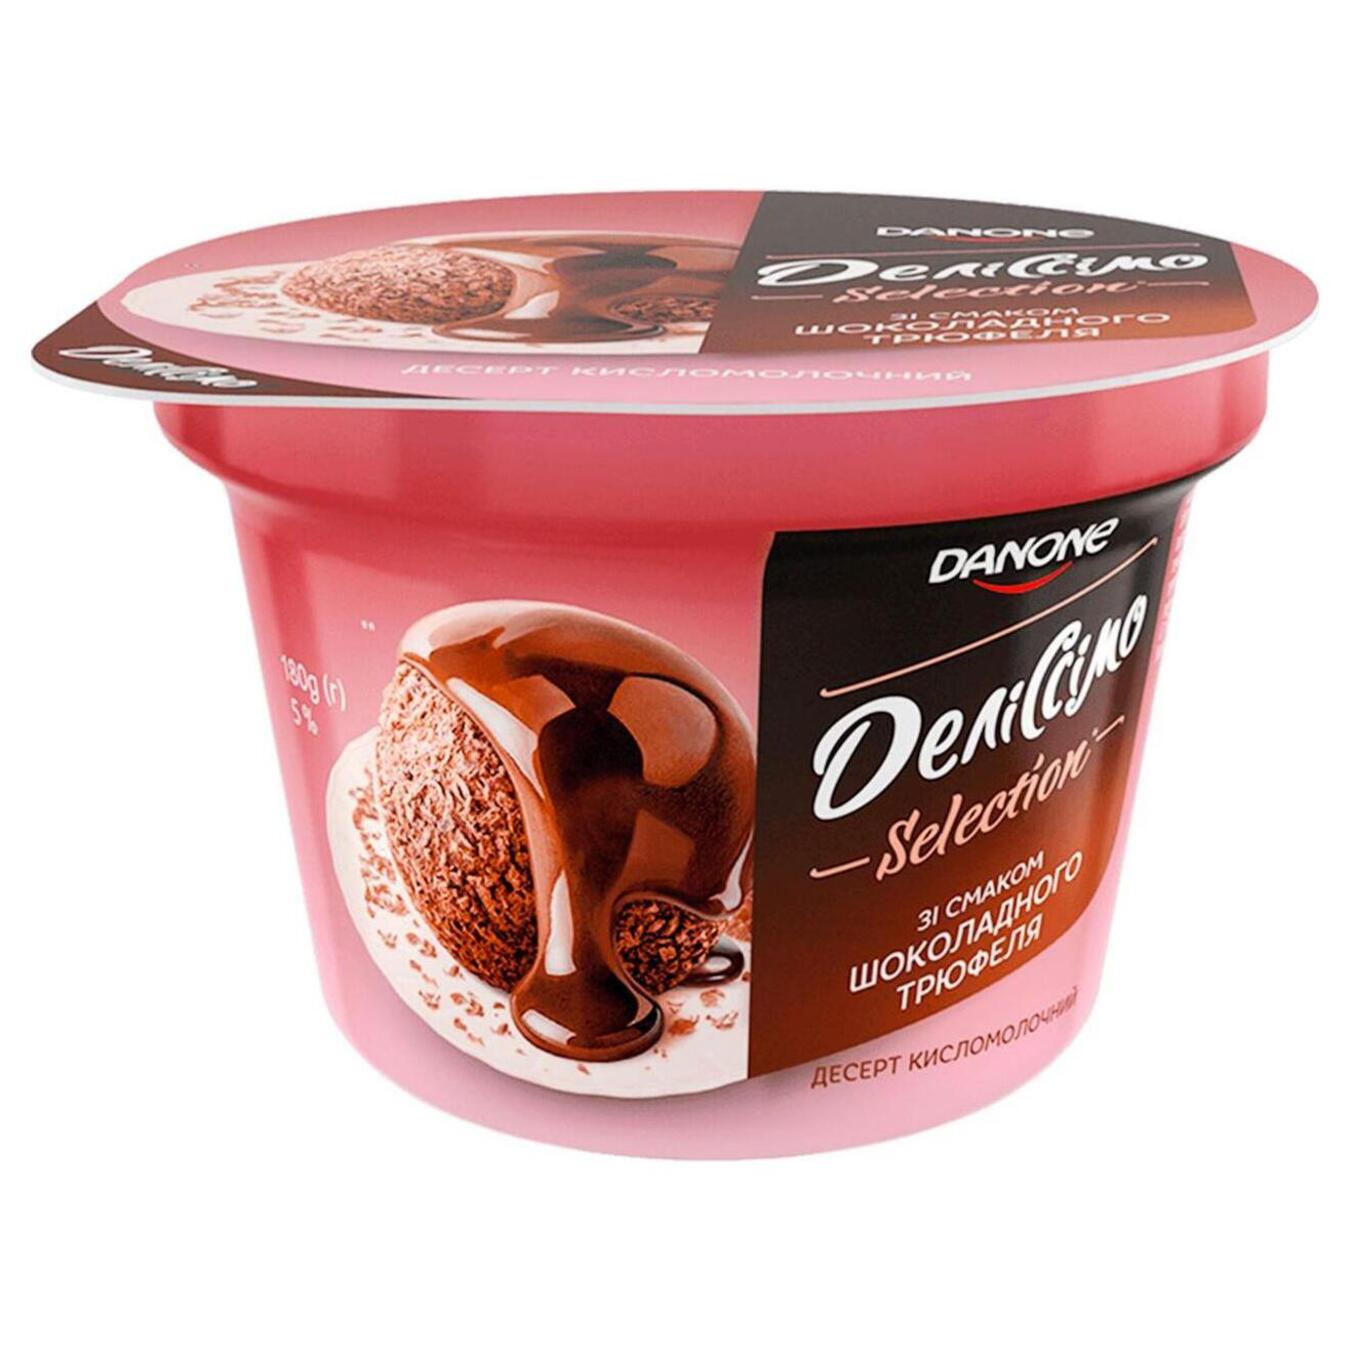 Десерт кисломолочный Danone Делиссимо со вкусом шоколадного трюфеля стакан 5% 180г